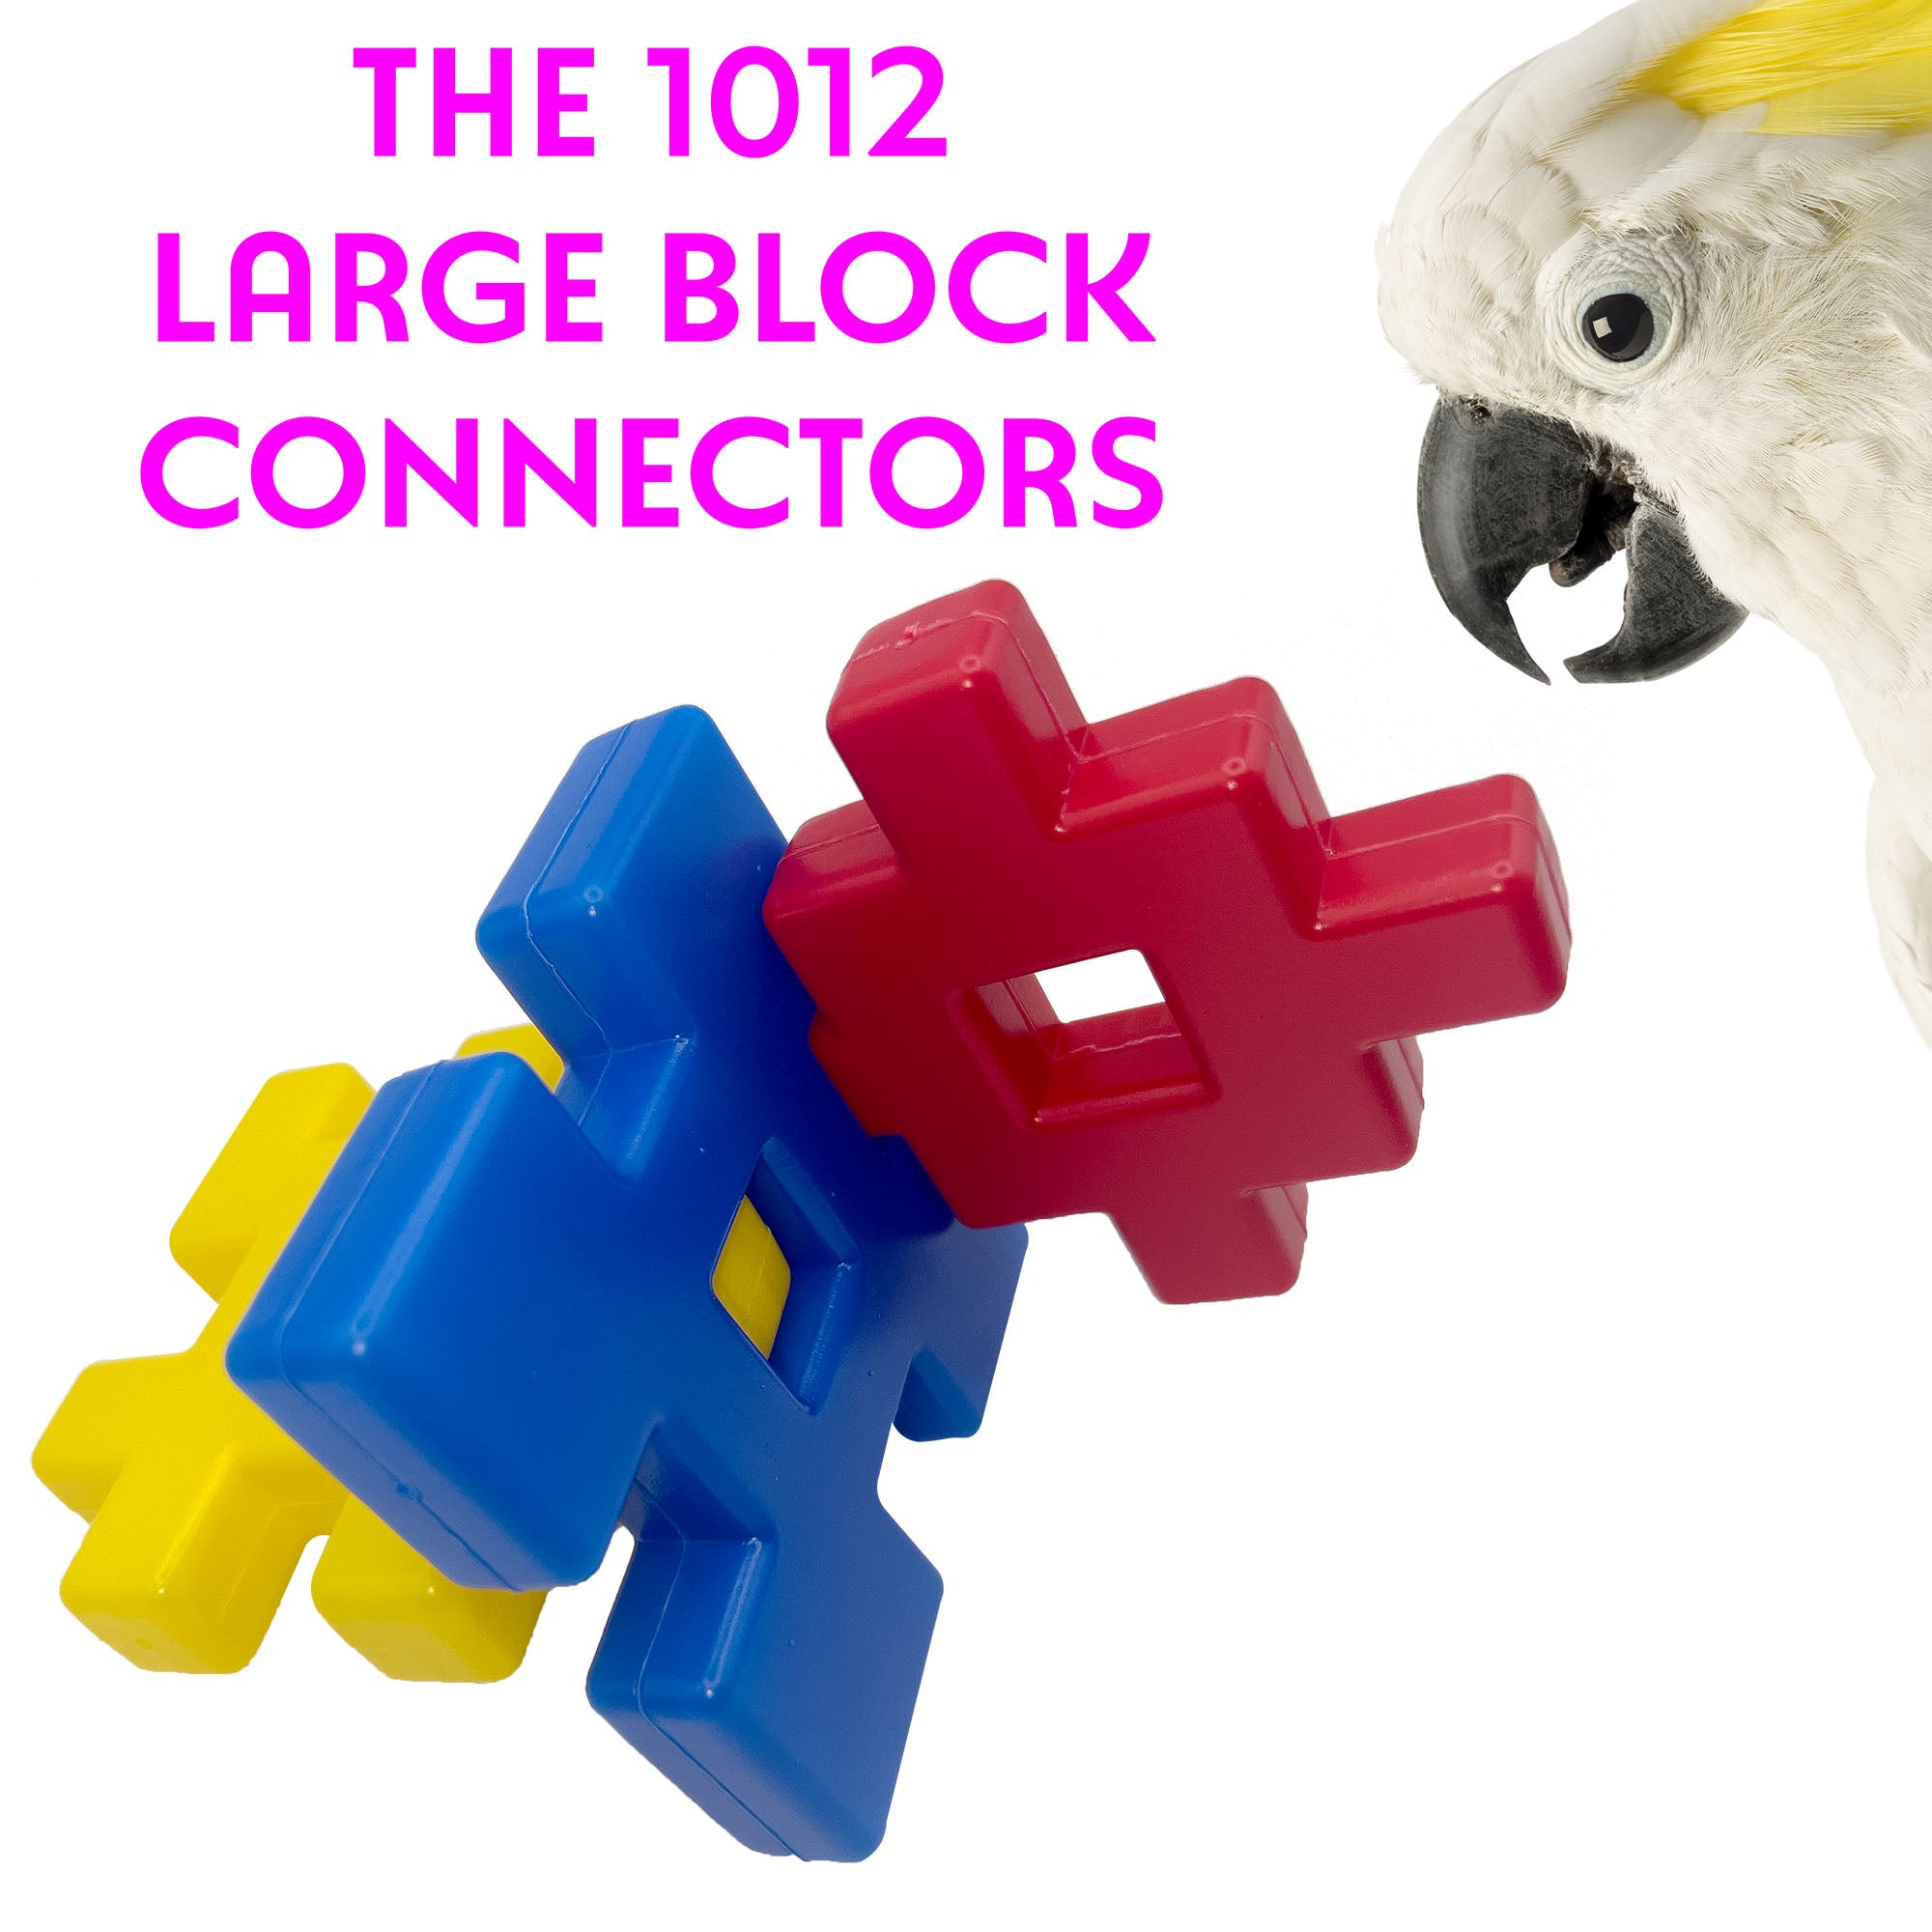 1012 Large Block Connectors